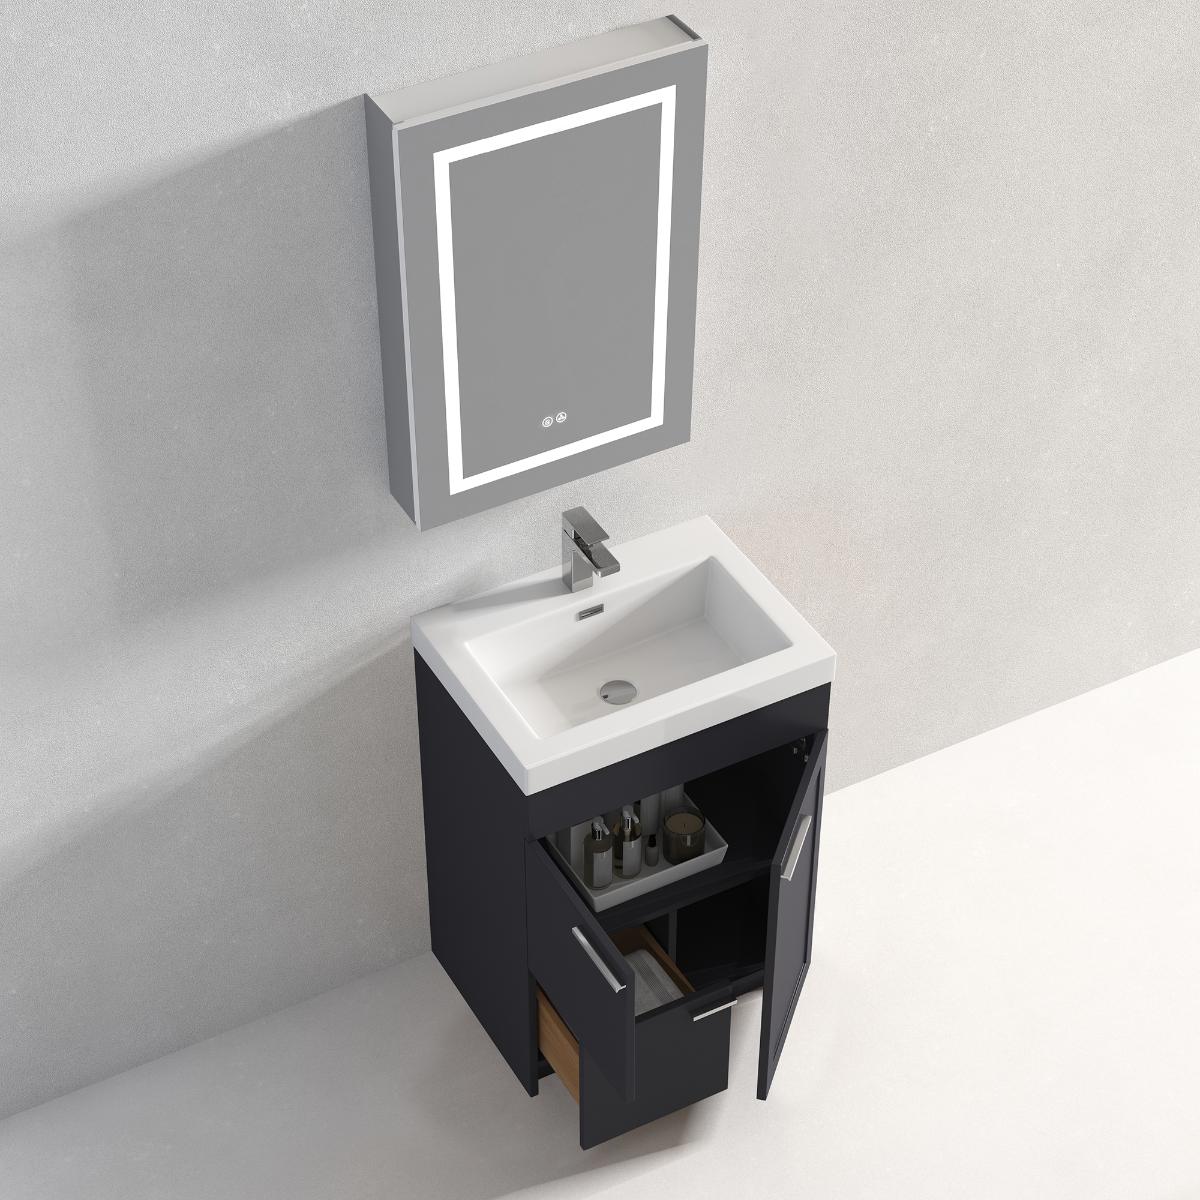 Hanover 24" Bathroom Vanity with Acrylic Top - Contemporary Bathroom Vanity